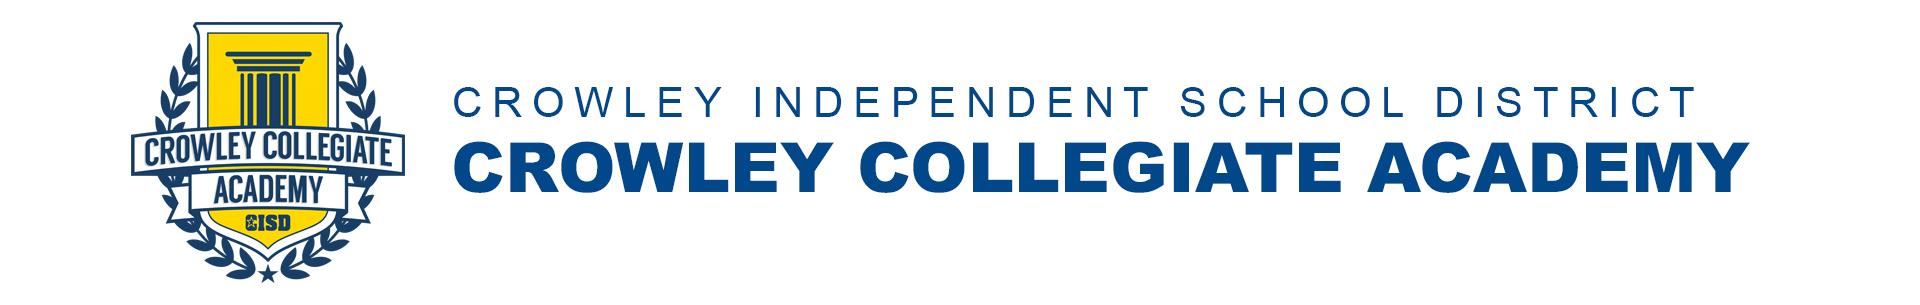 Crowley ISD - Crowley Collegiate Academy 